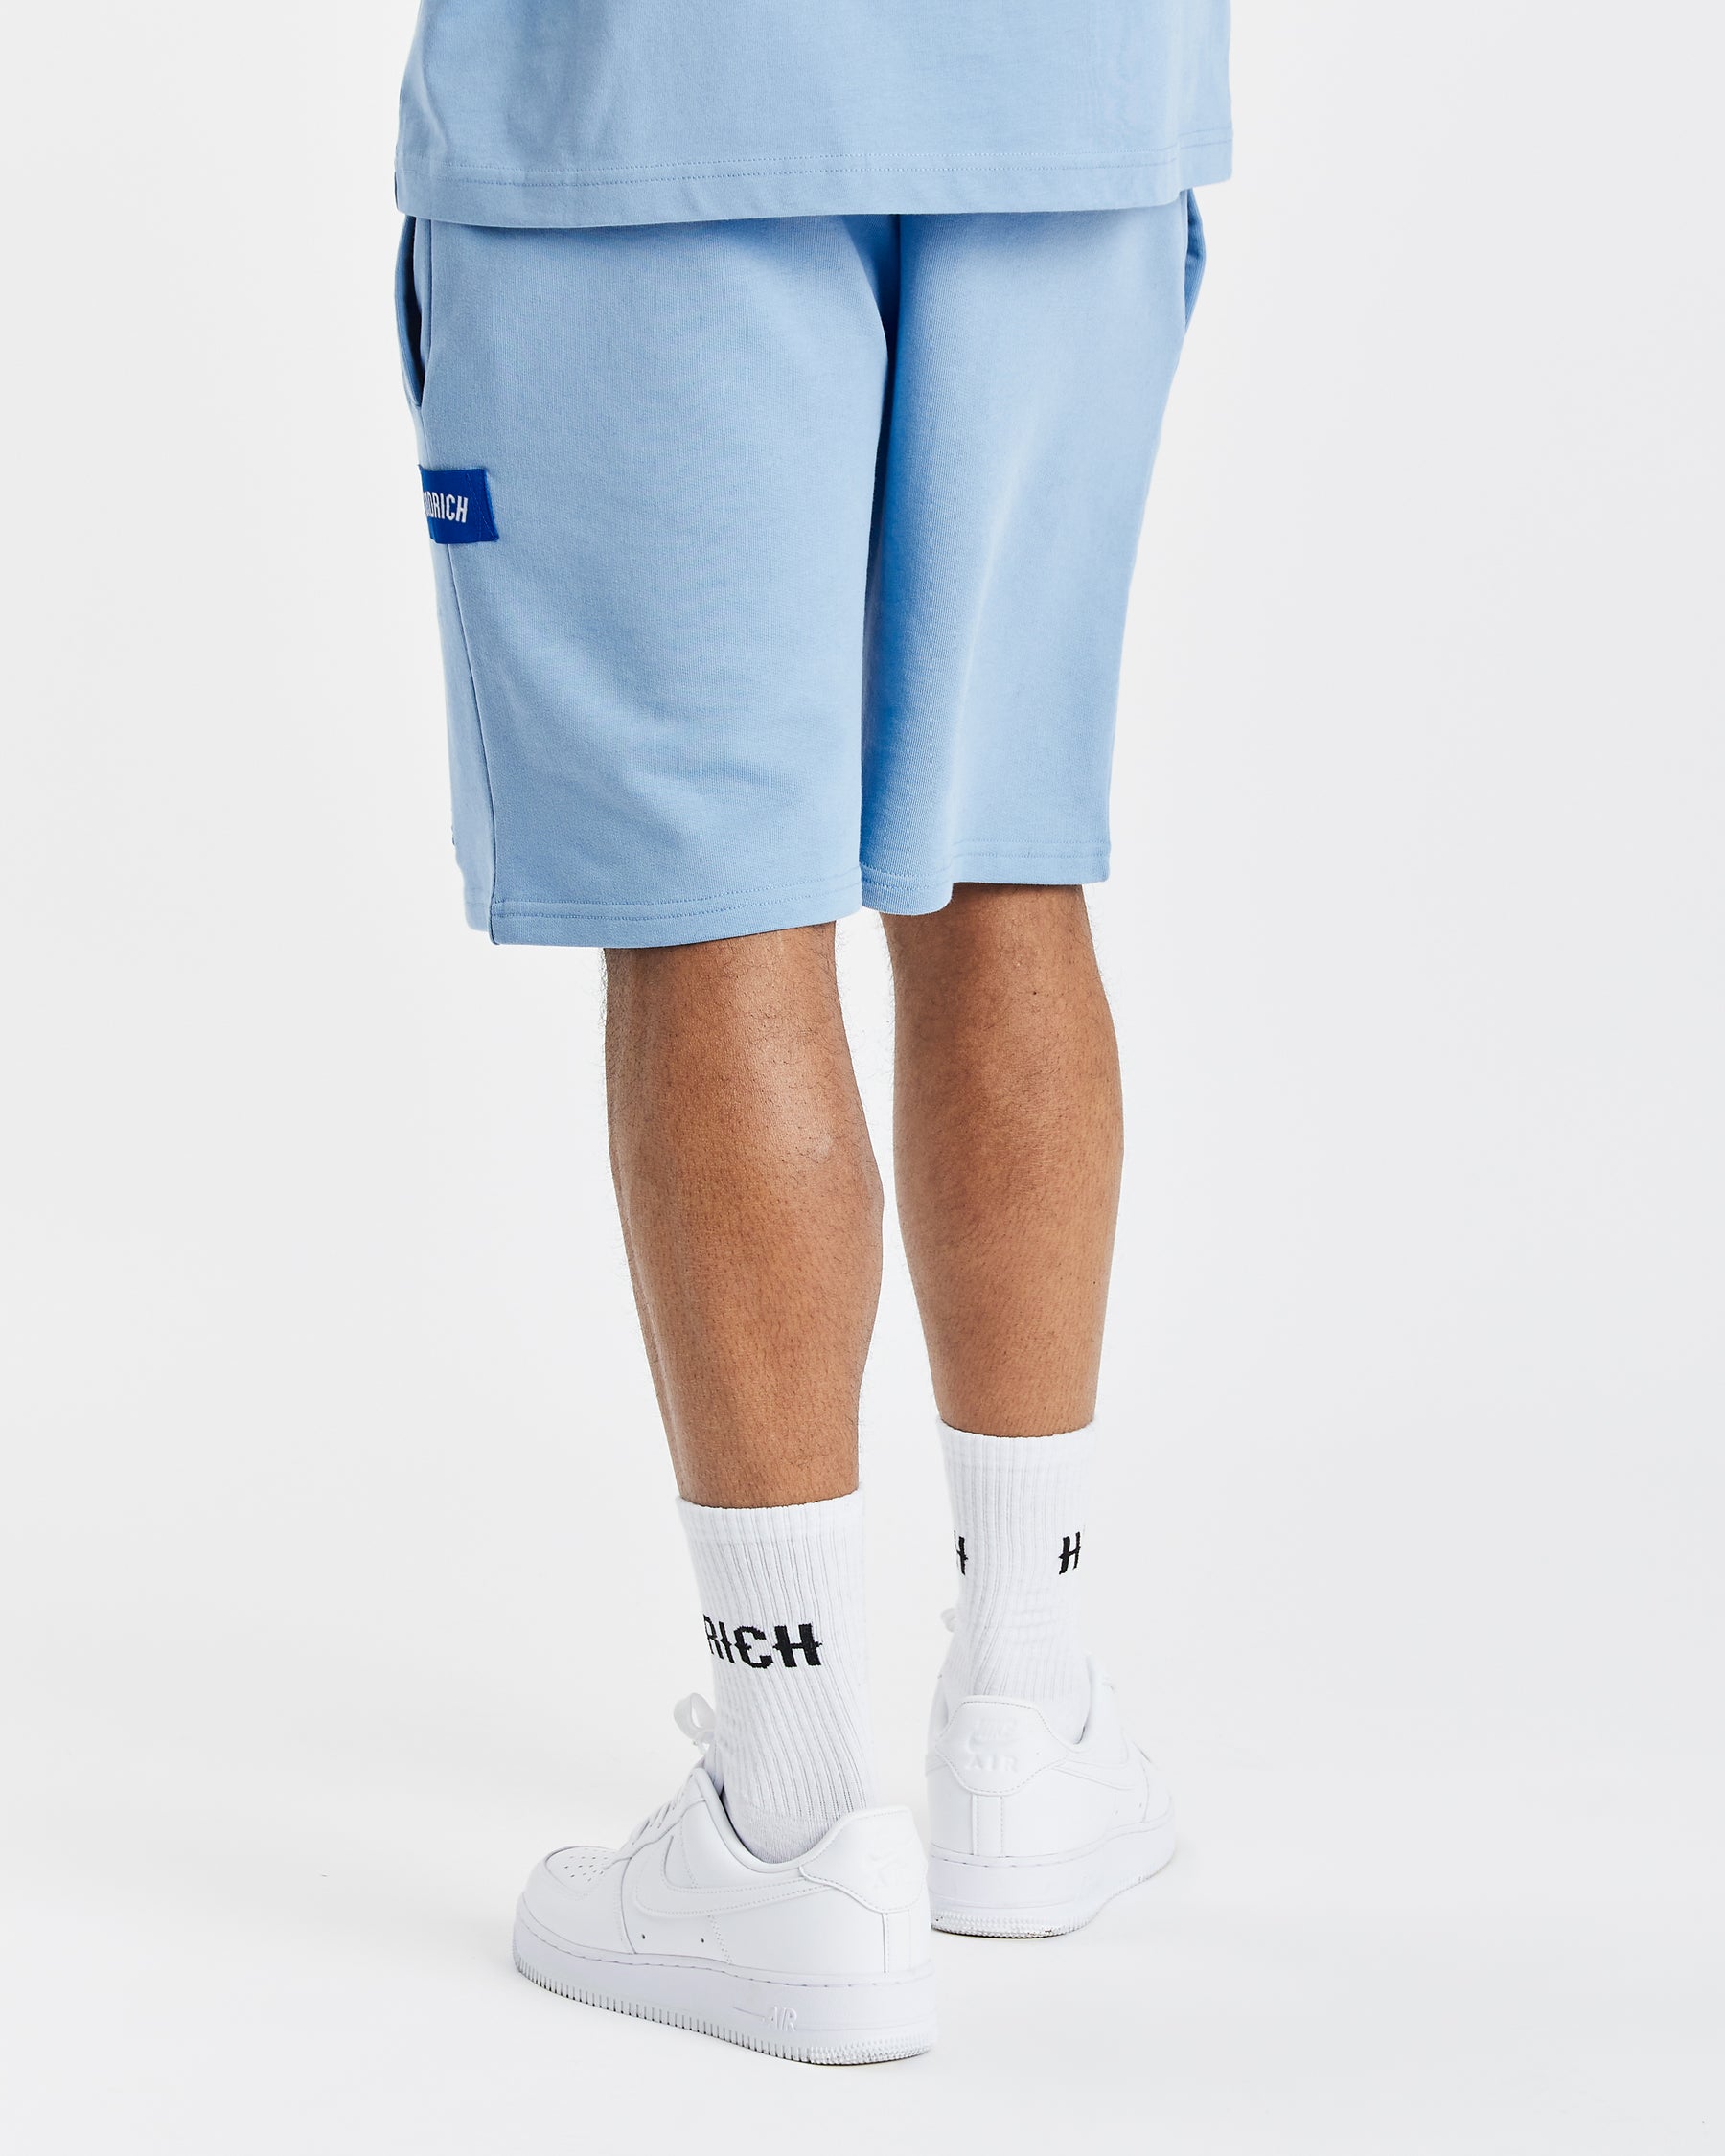 OG Pacific V2 Shorts - Blue/White